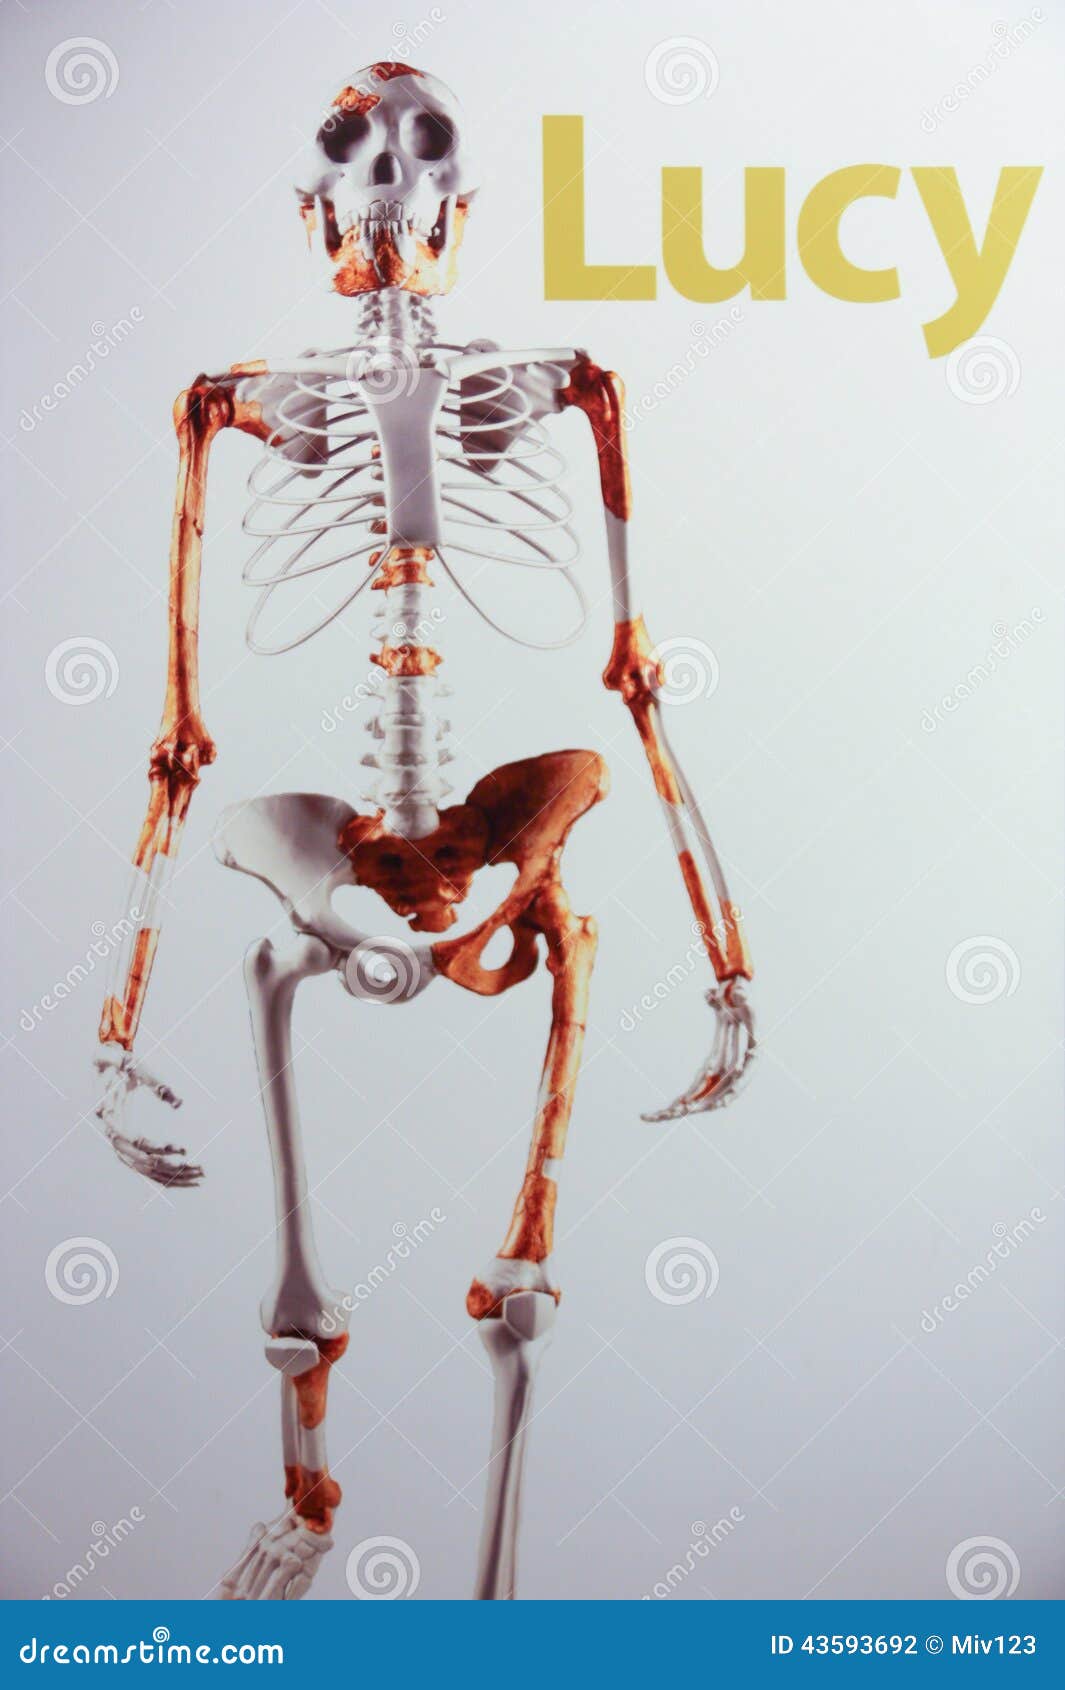 skeleton-lucy-female-australopithecus-43593692.jpg